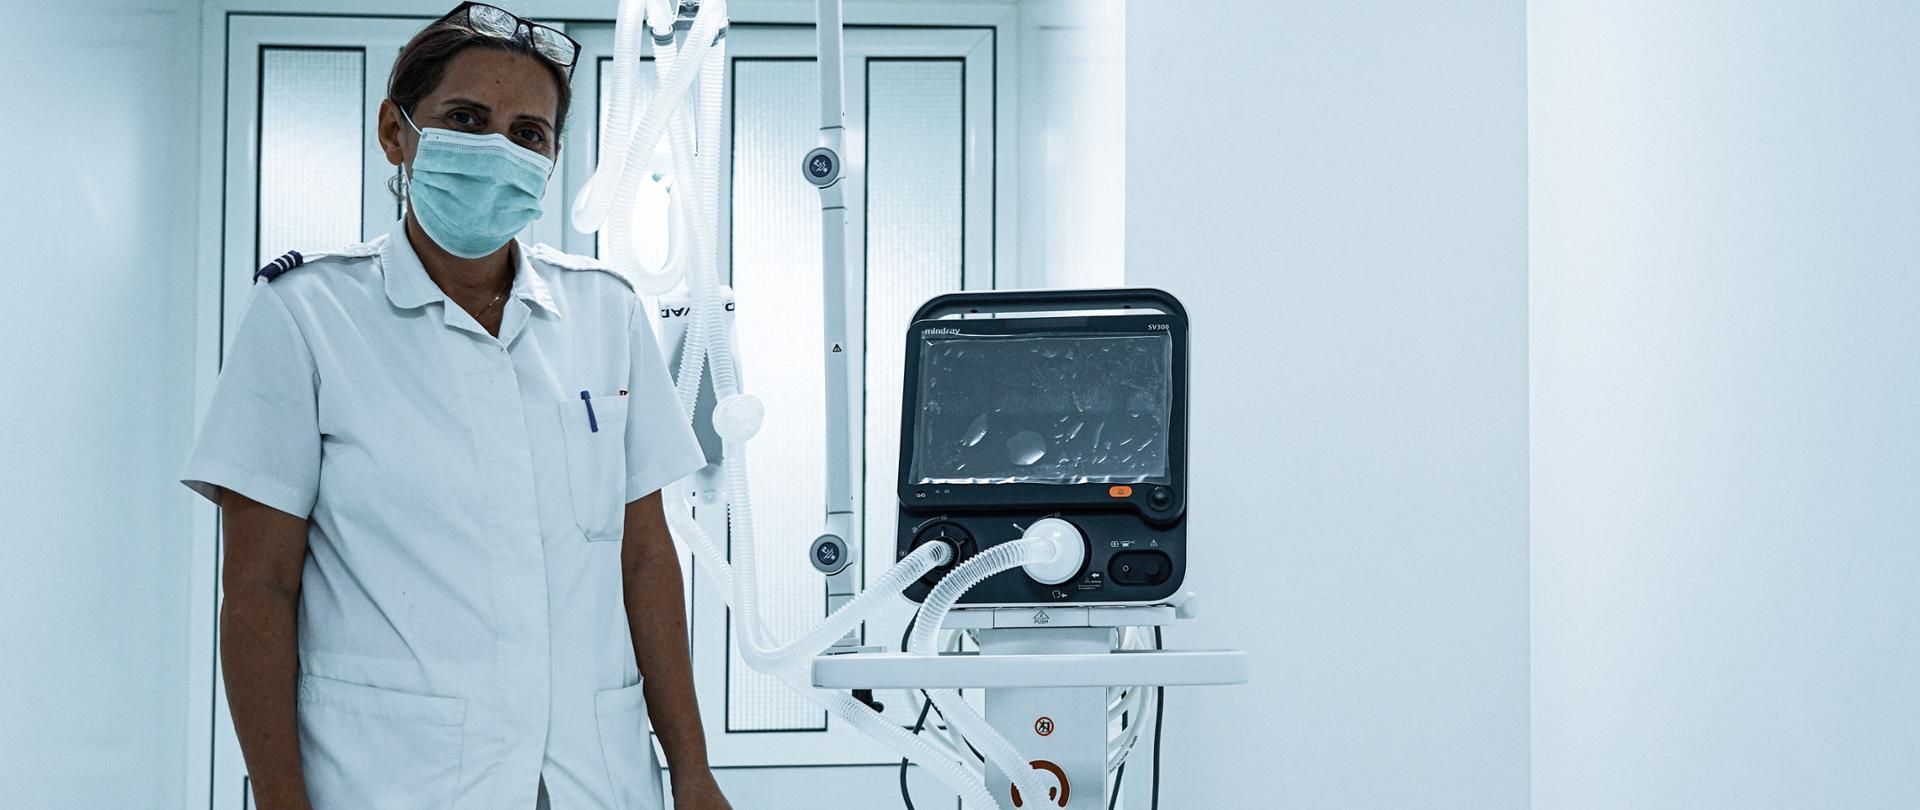 pracownik medyczny stoi obok respiratora oznakowanego naklejką Polish Aid